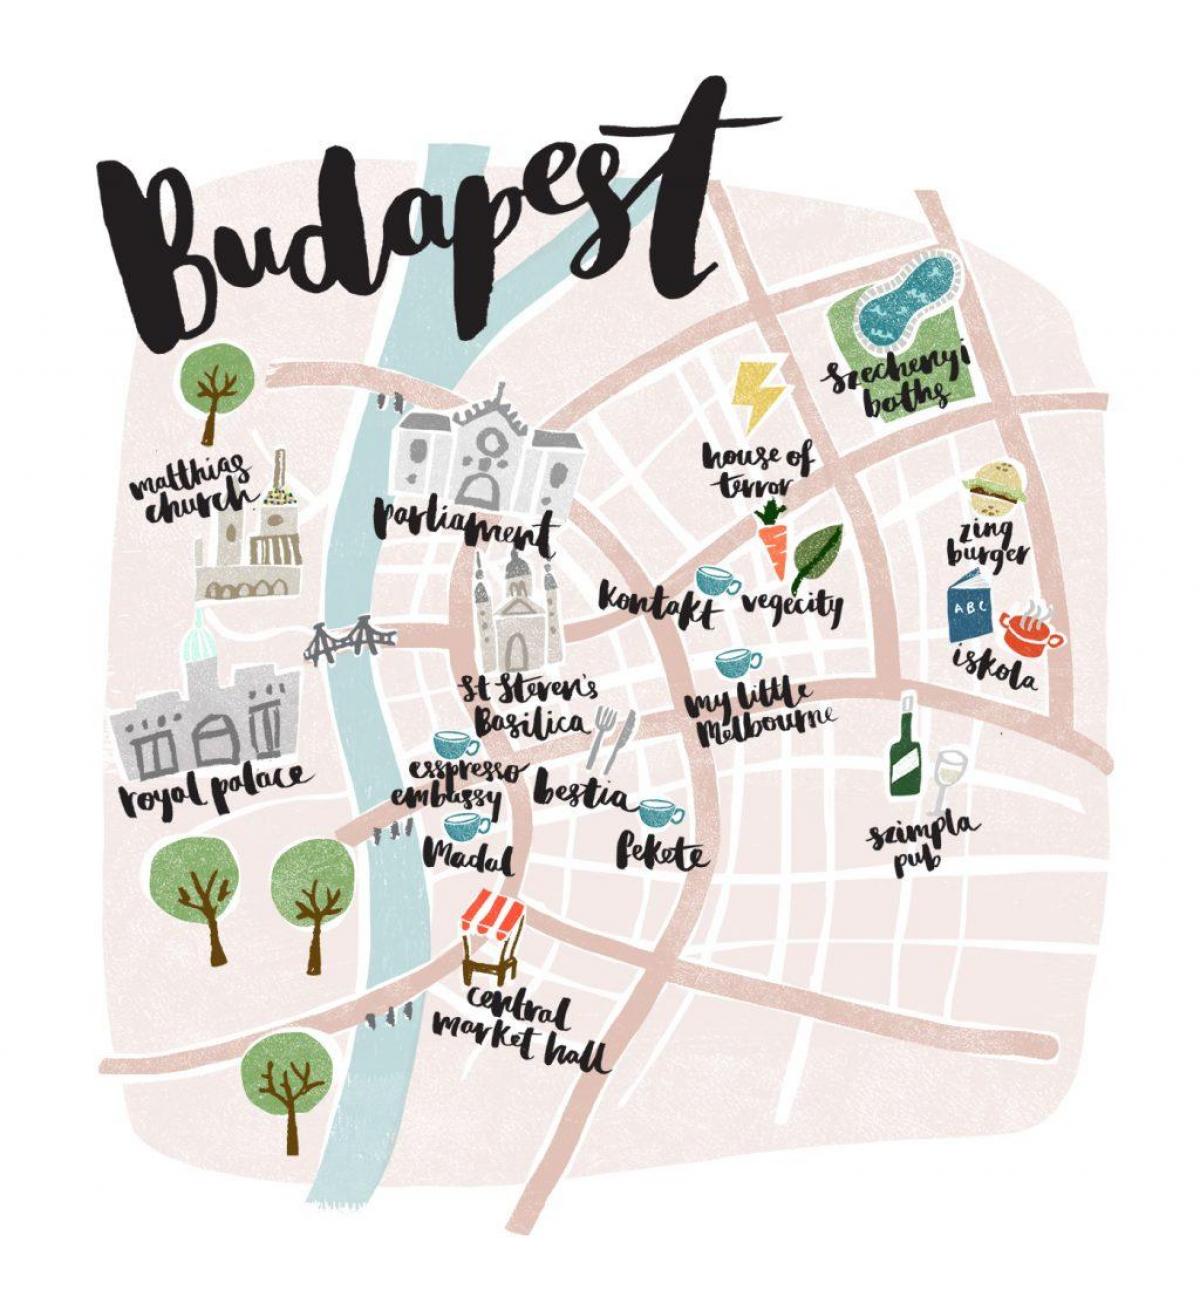 zemljevid budimpešti brez povezave